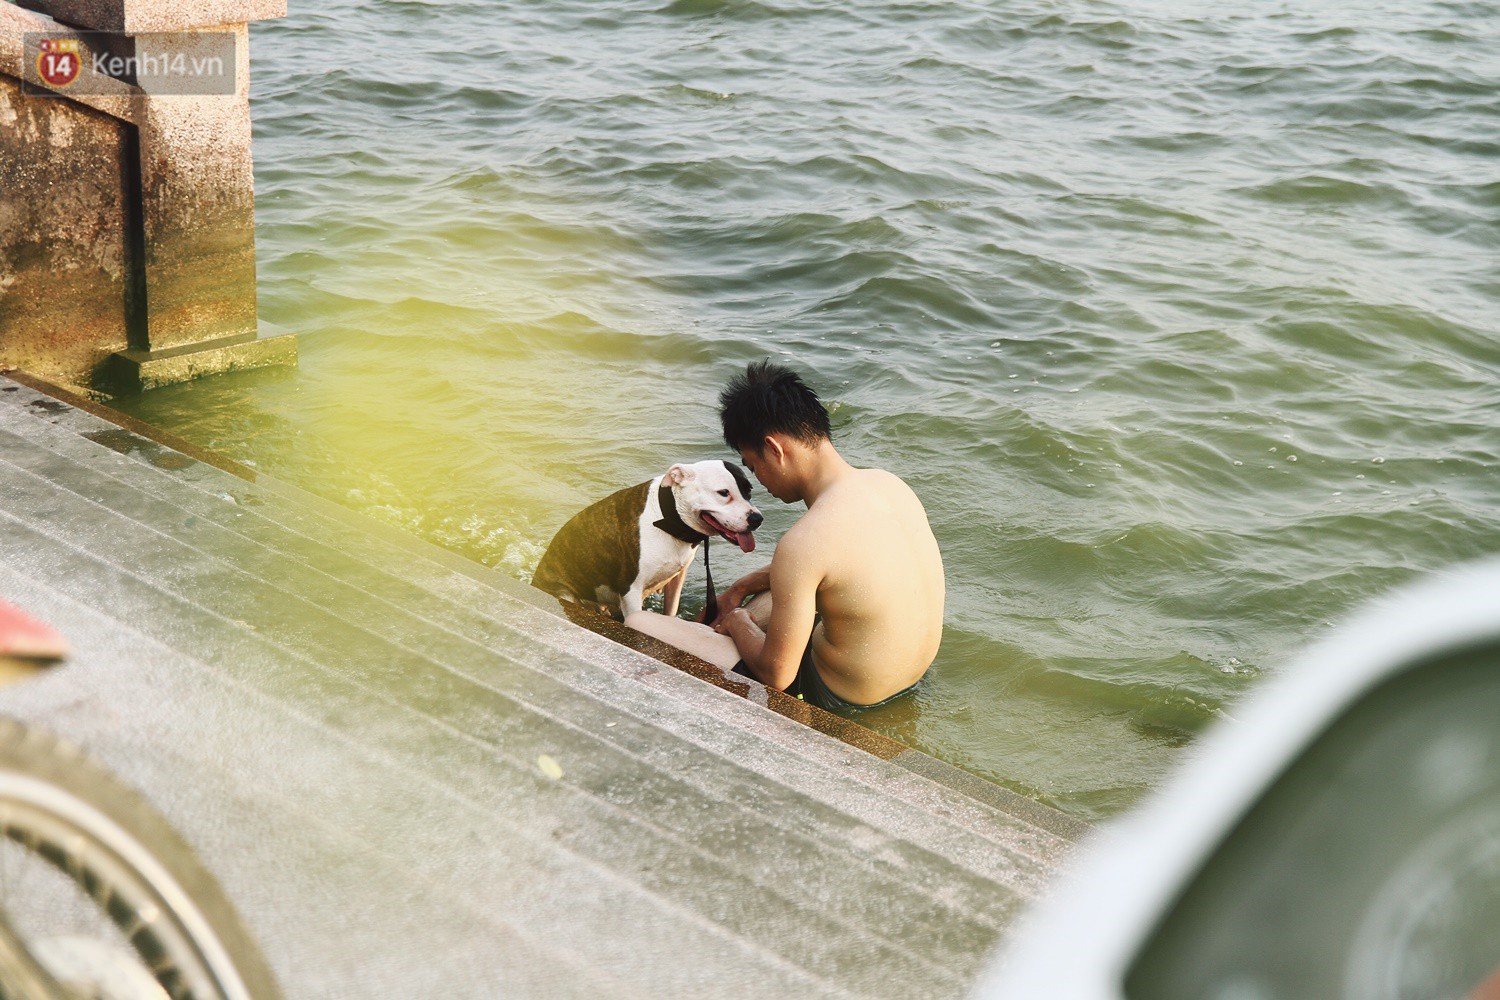 Nắng nóng oi bức, người dân Thủ đô bế chó cưng ra Hồ Tây cùng tắm để giải nhiệt dù có biển cấm - Ảnh 14.